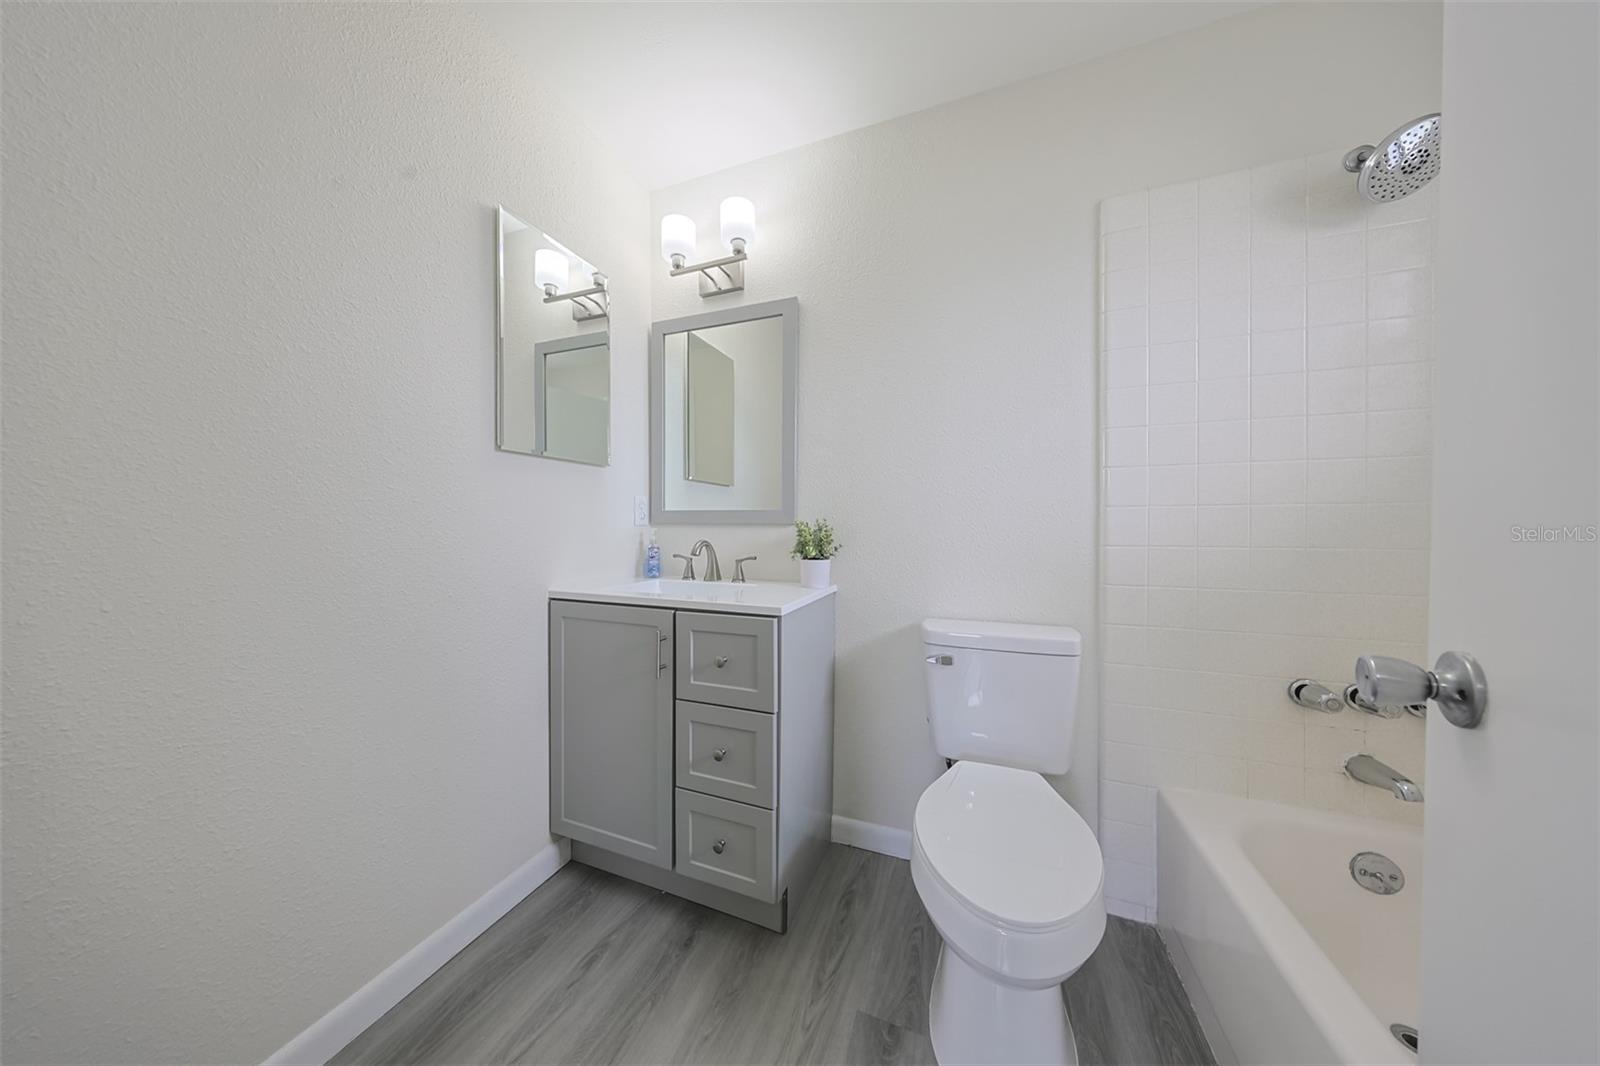 Primary Bathroom-New Vanity, Sink, Lighting , Fixtures & Toilet